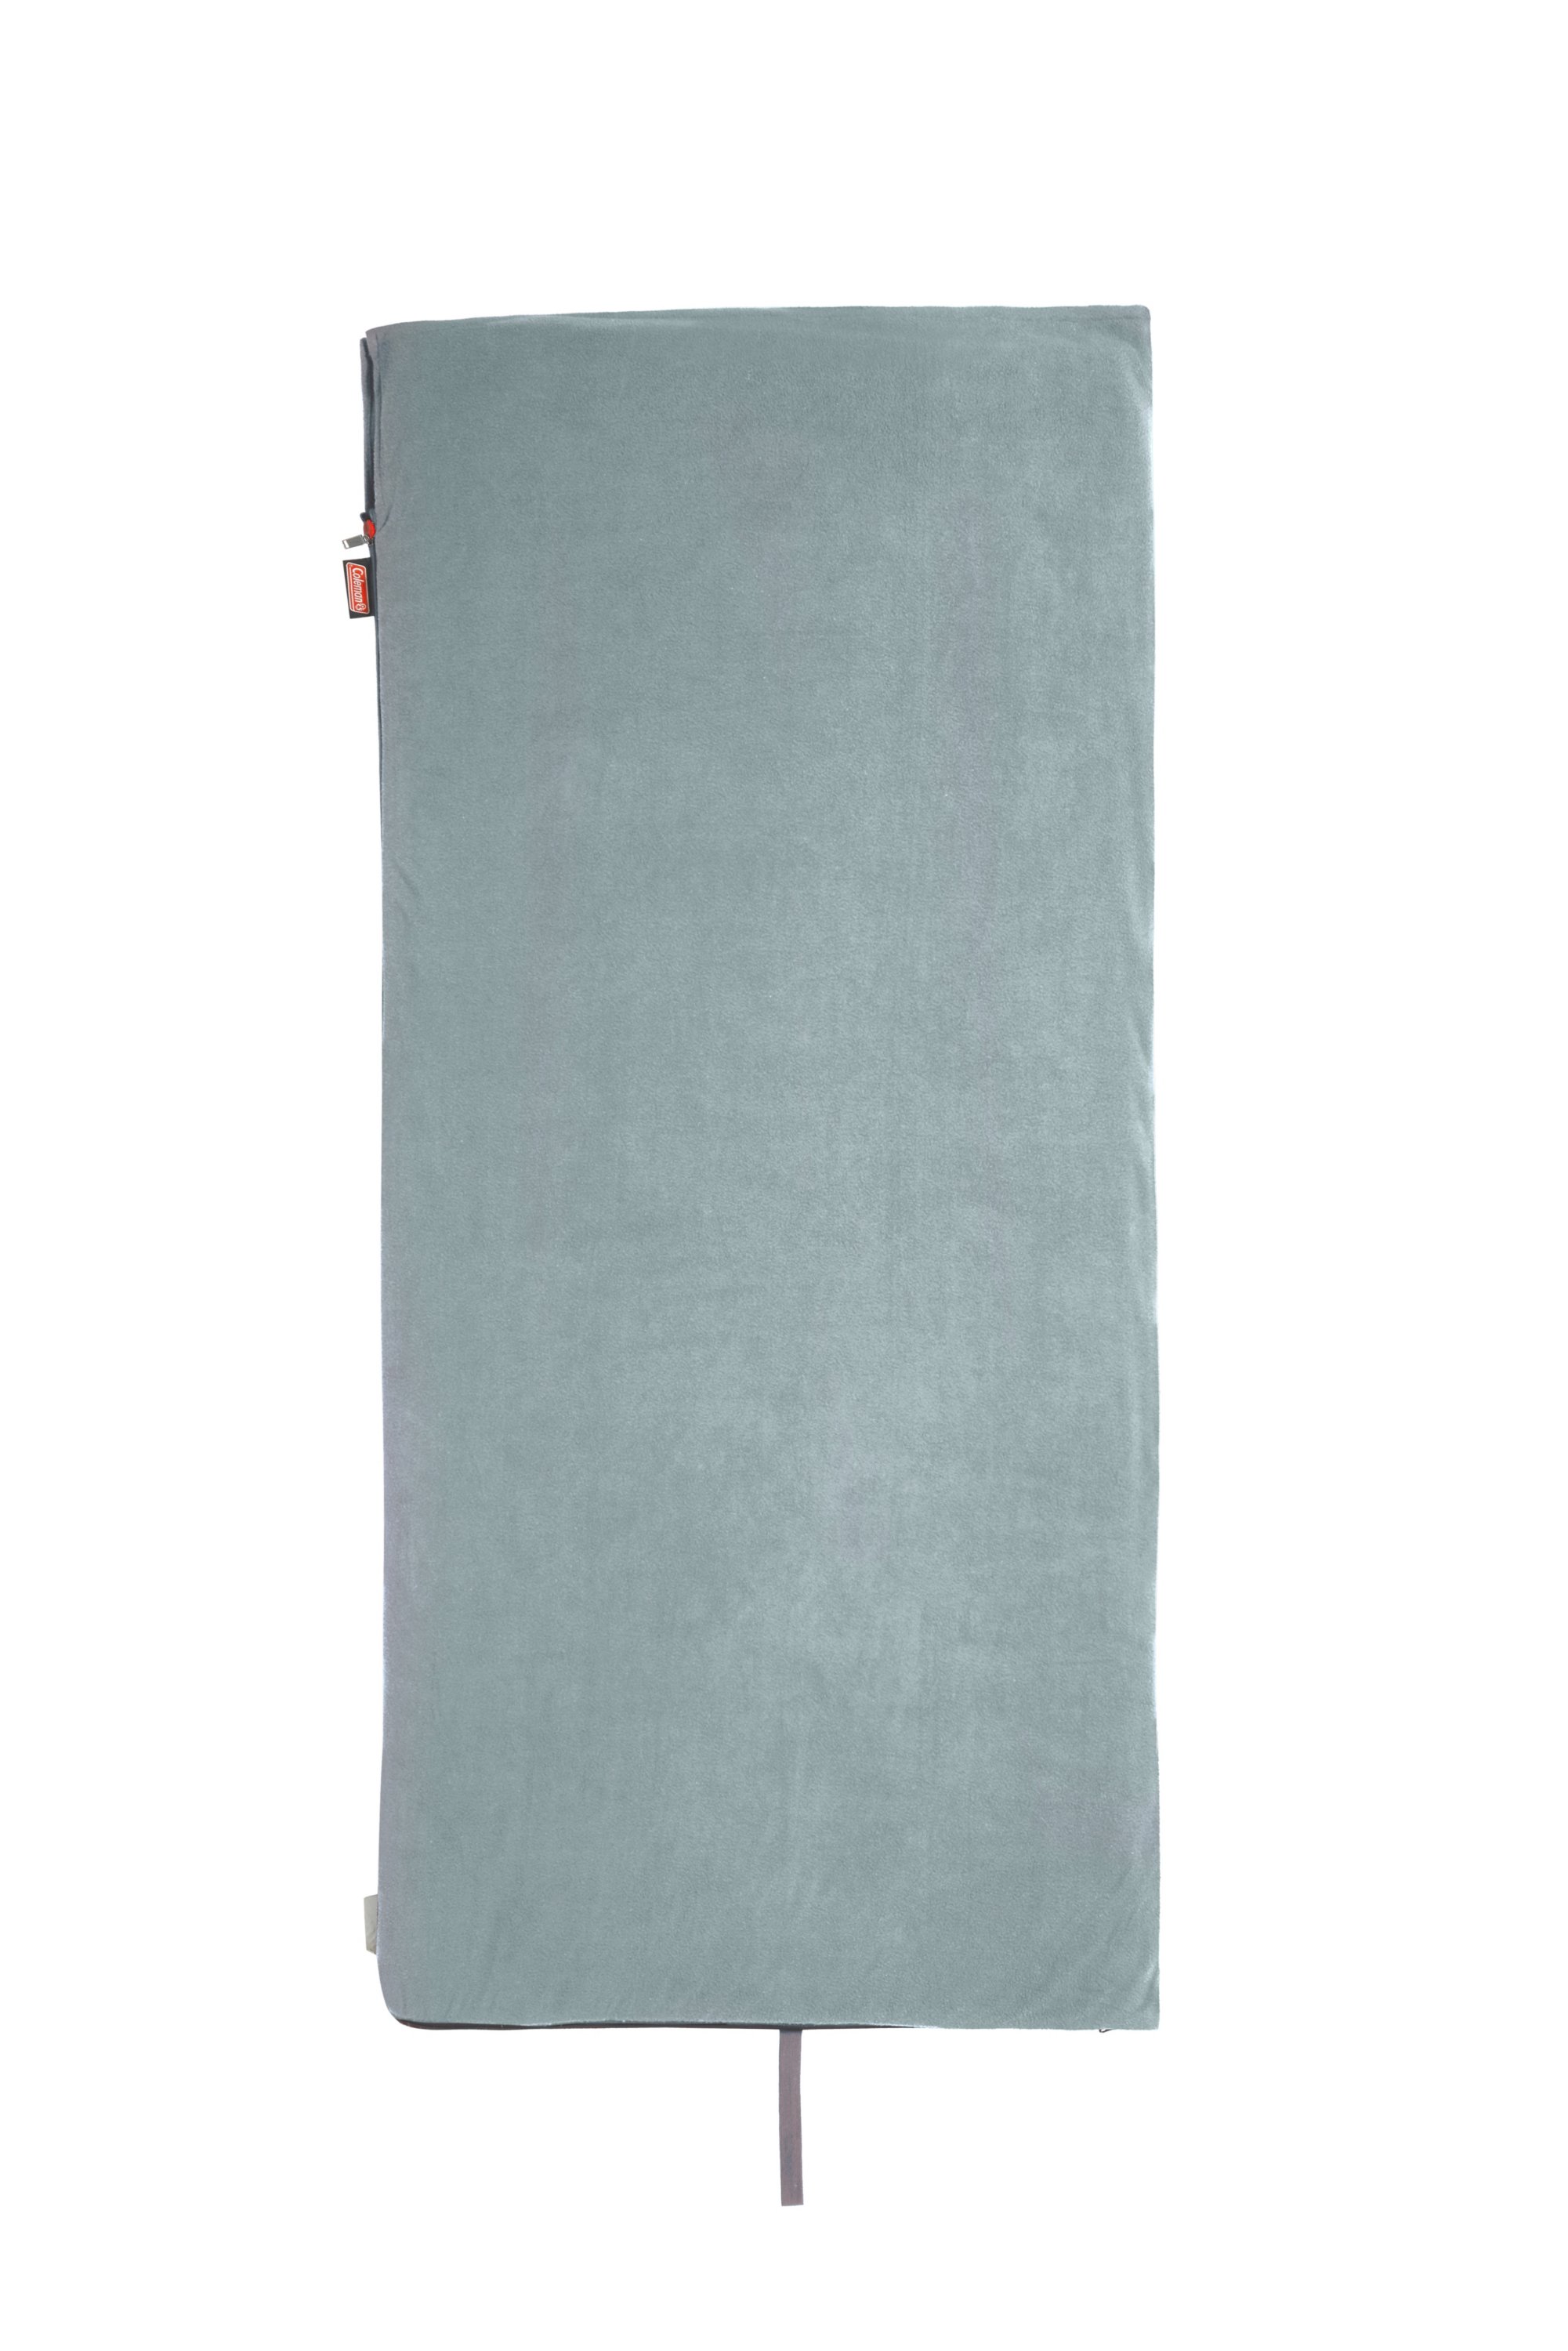 Coleman 1391254 Stratus Sleeping Bag Fleece Liner - One Only